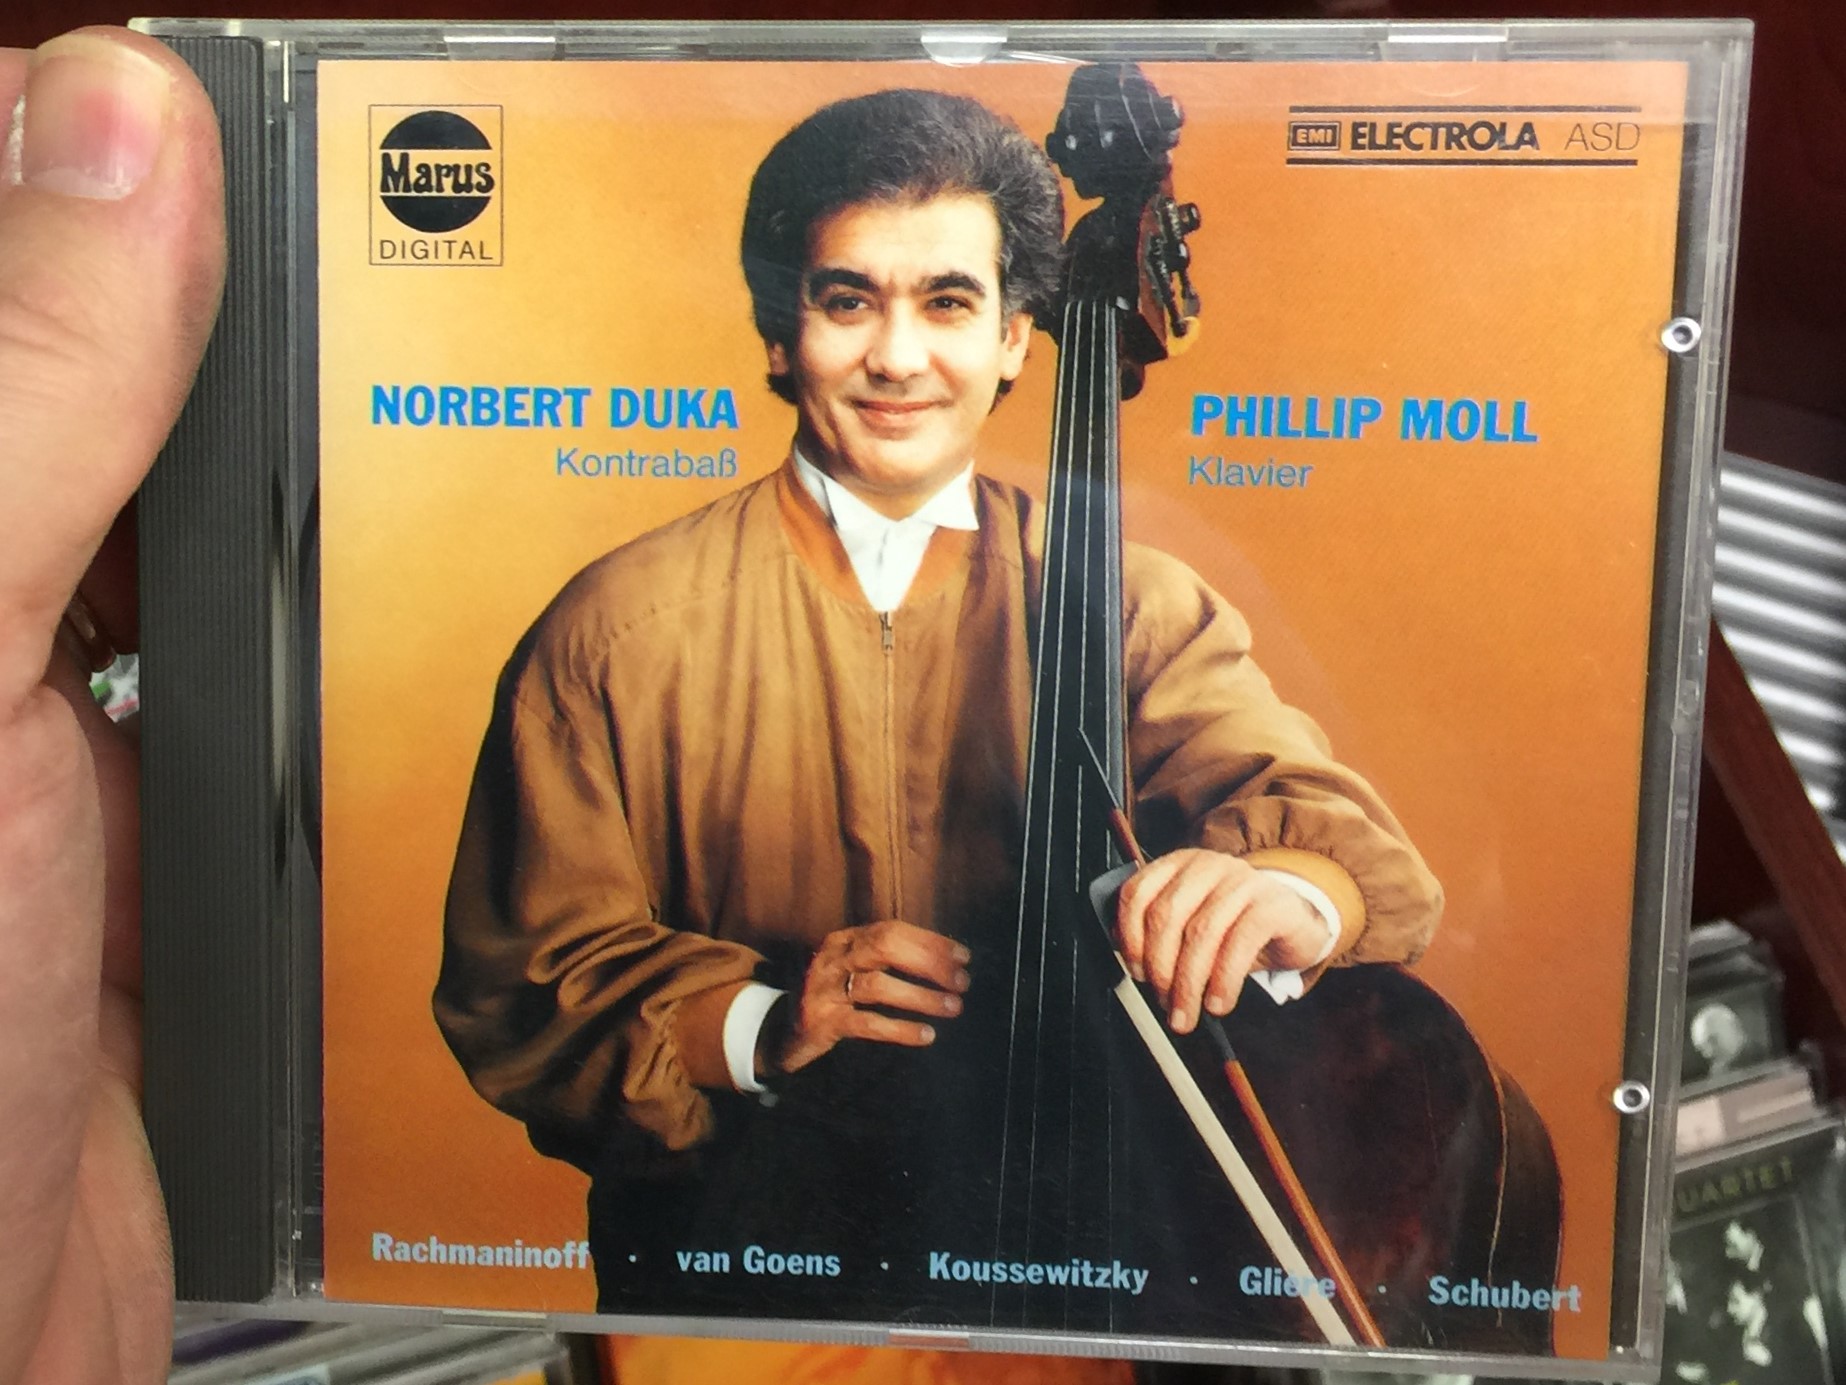 norbert-duka-contrabass-phillip-moll-piano-rachmaninoff-van-goens-koussewitzky-gliere-schubert-marus-audio-cd-1989-stereo-909051-1-.jpg